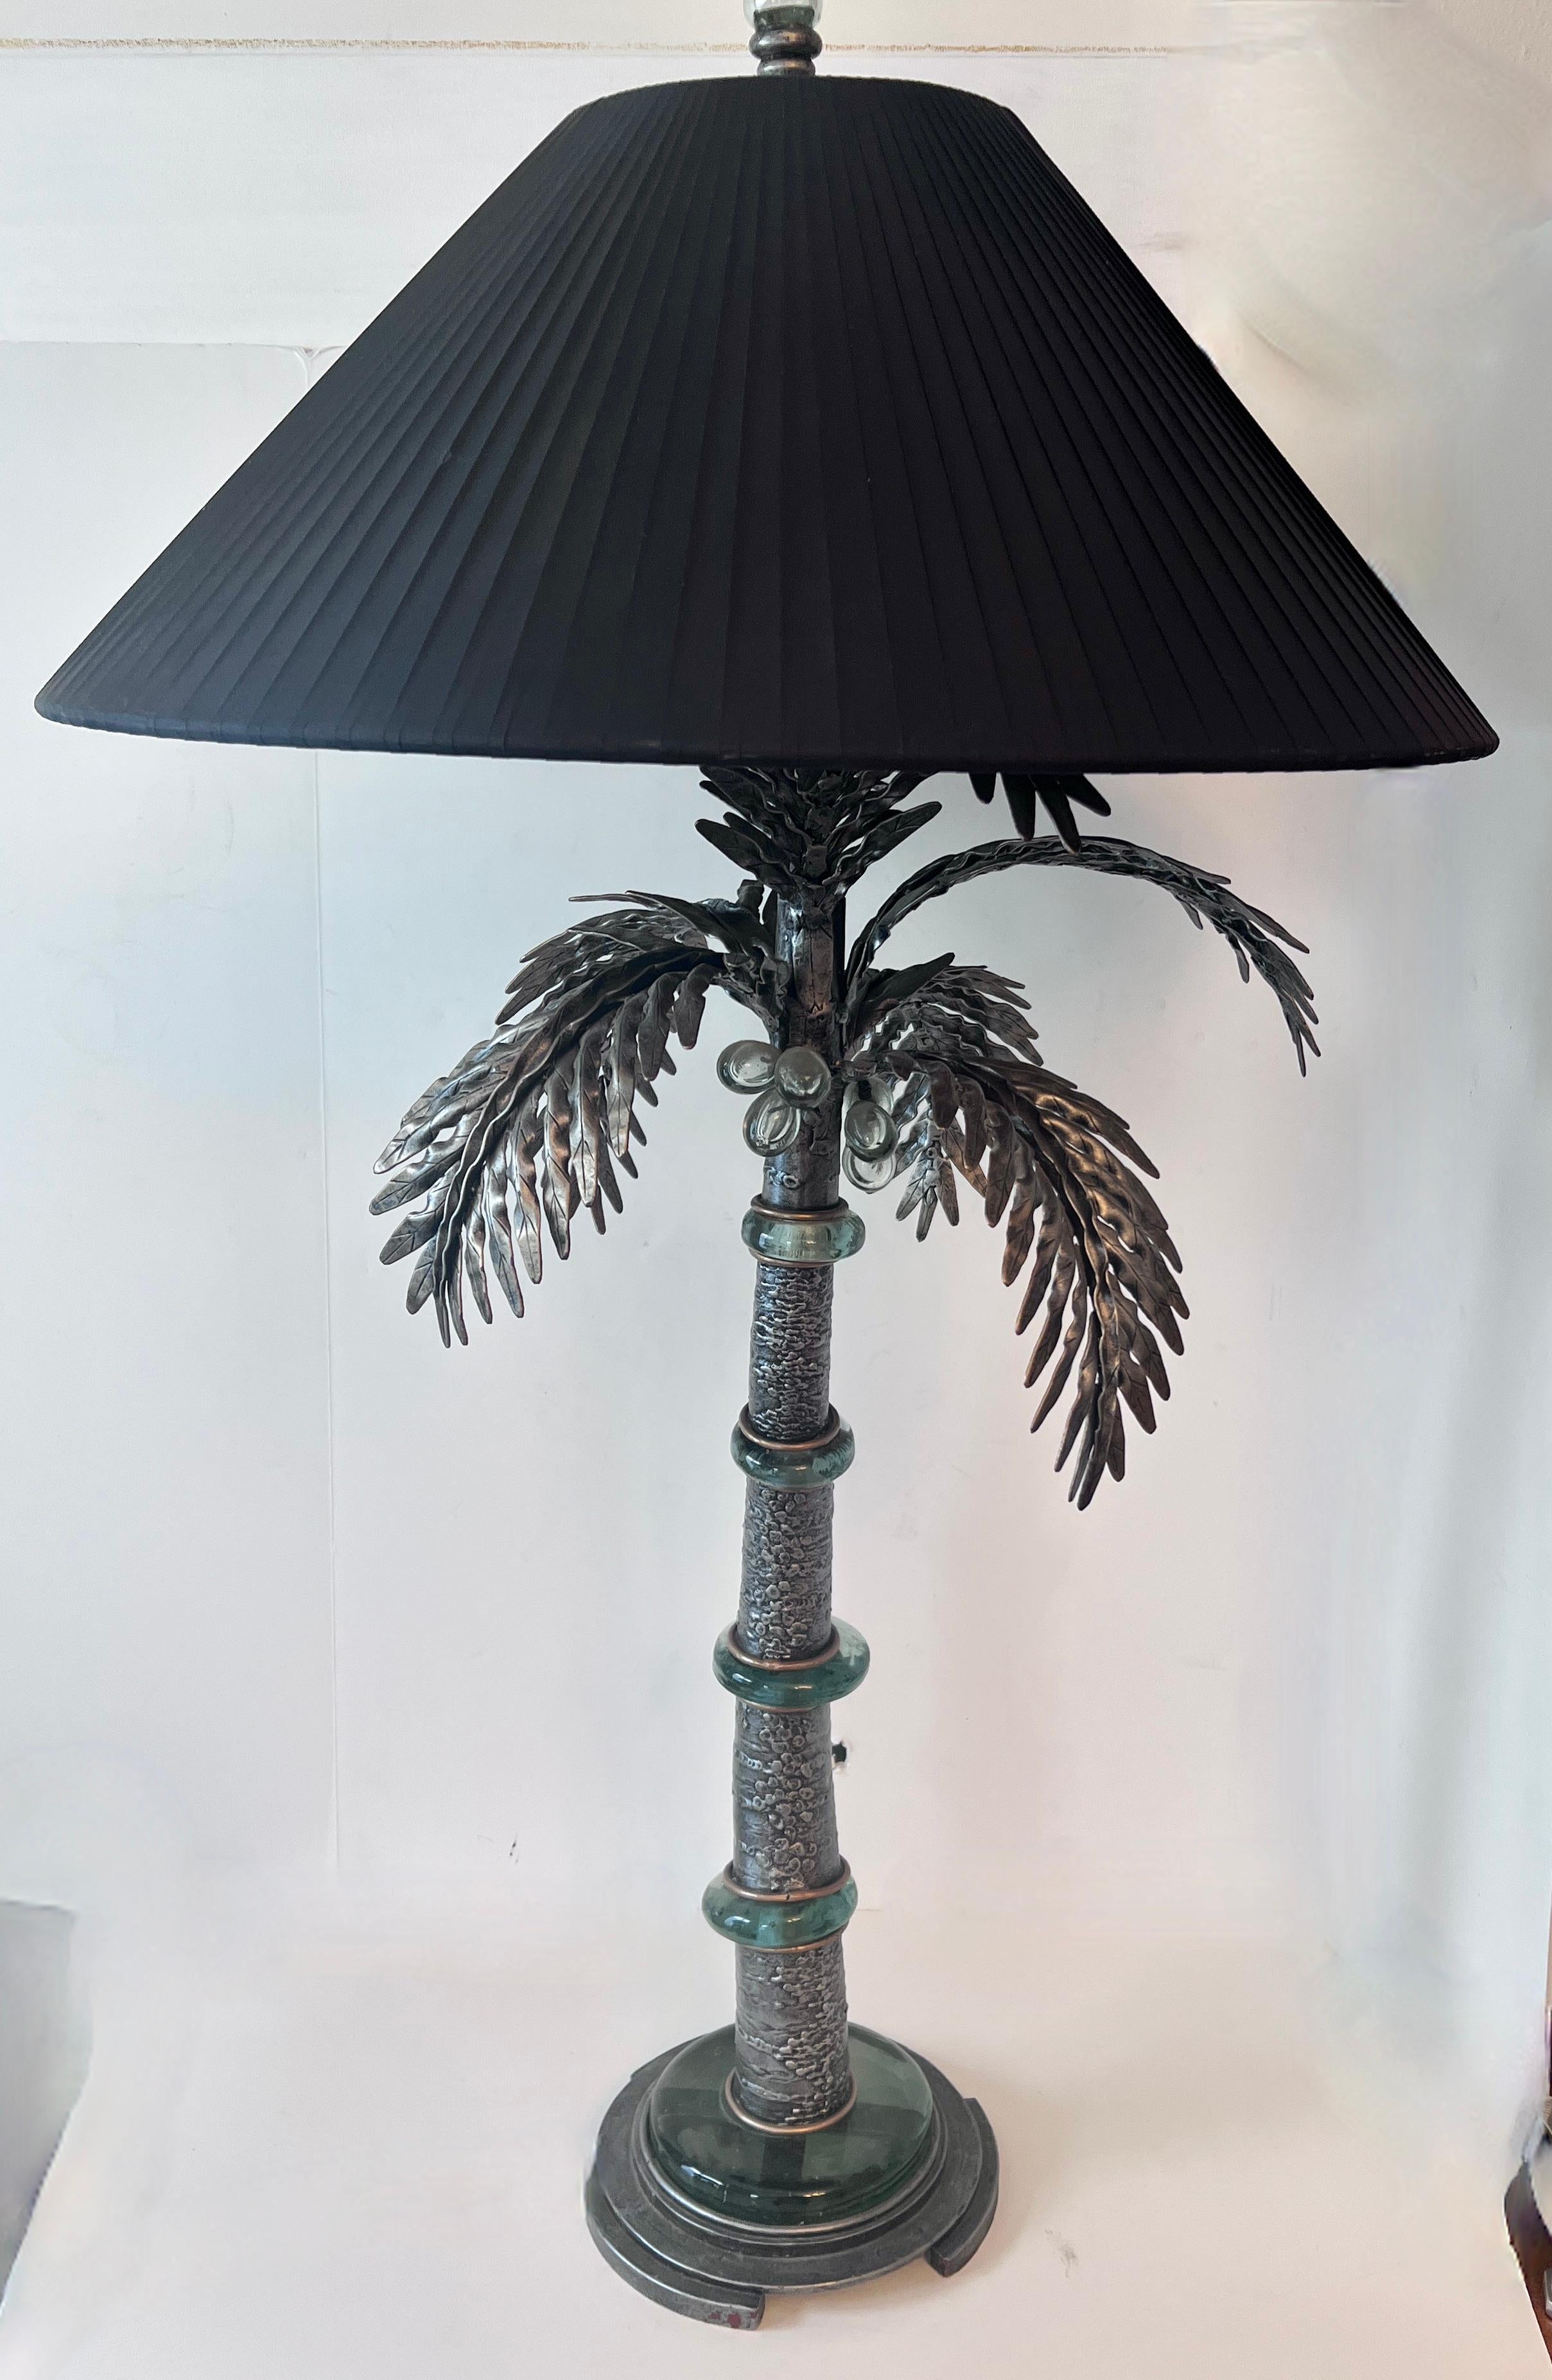 Eine wunderschön gestaltete und einzigartige Tischleuchte im Stil und in der Form einer Palme.

Der Lampenkern ist aus Metall gefertigt und glasiert.  Die Kurven der Palme sind in Segmente unterteilt, die durch ein dickes, grünes Gussglas getrennt